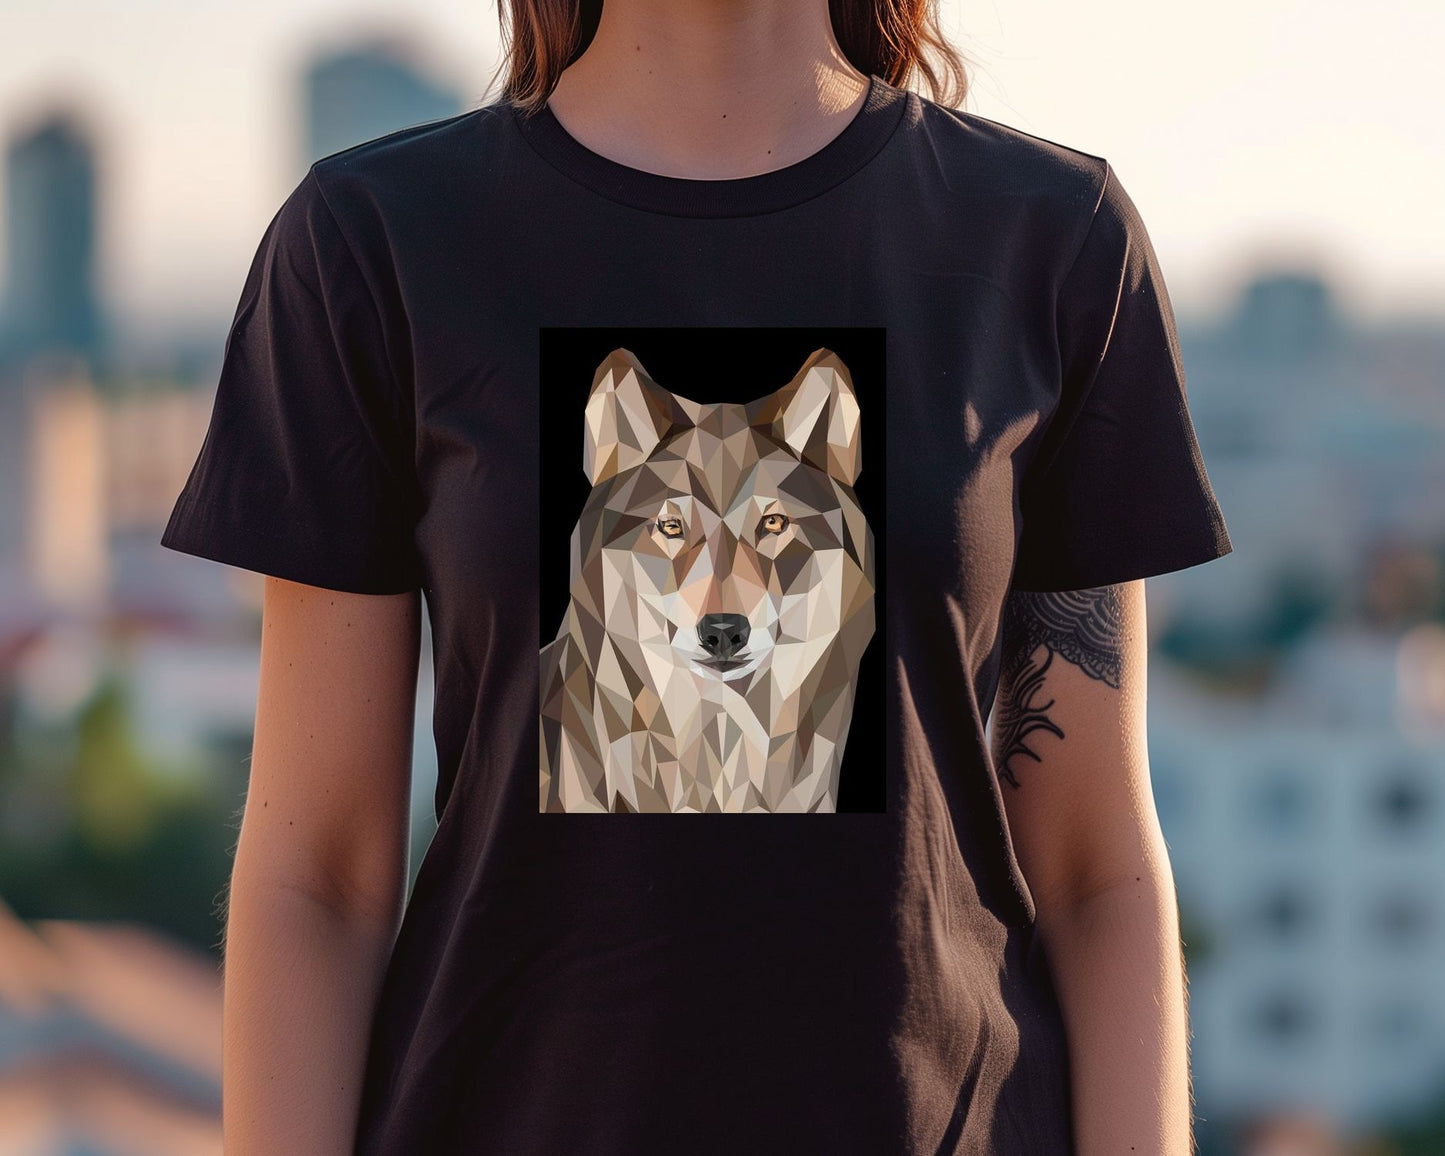 the wolves - @Artnesia